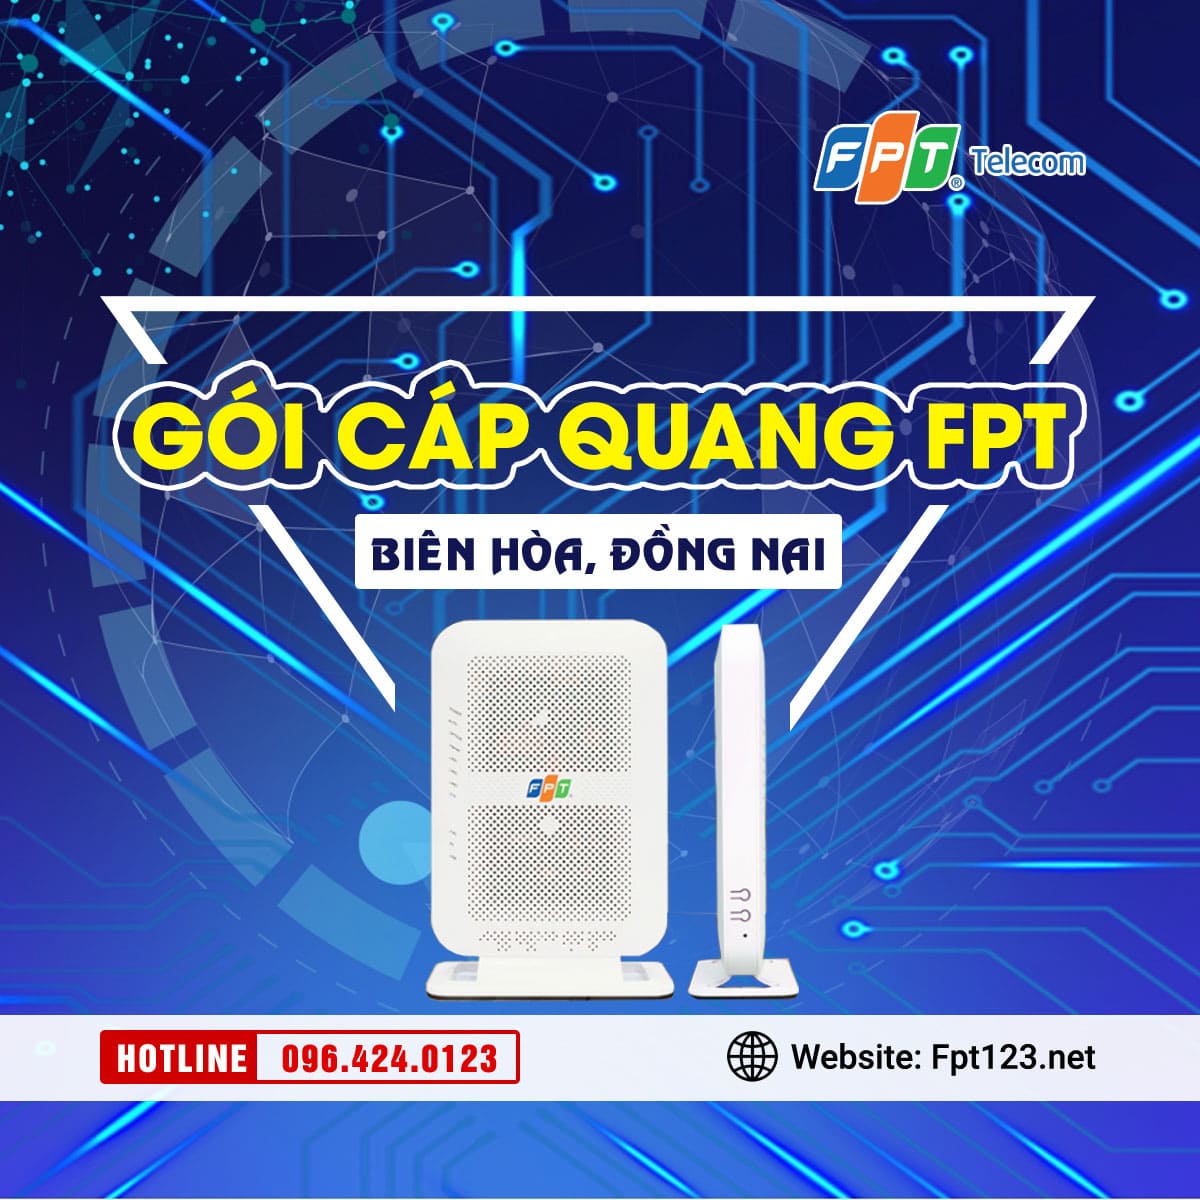 Gói cáp quang FPT Biên Hòa, Đồng Nai